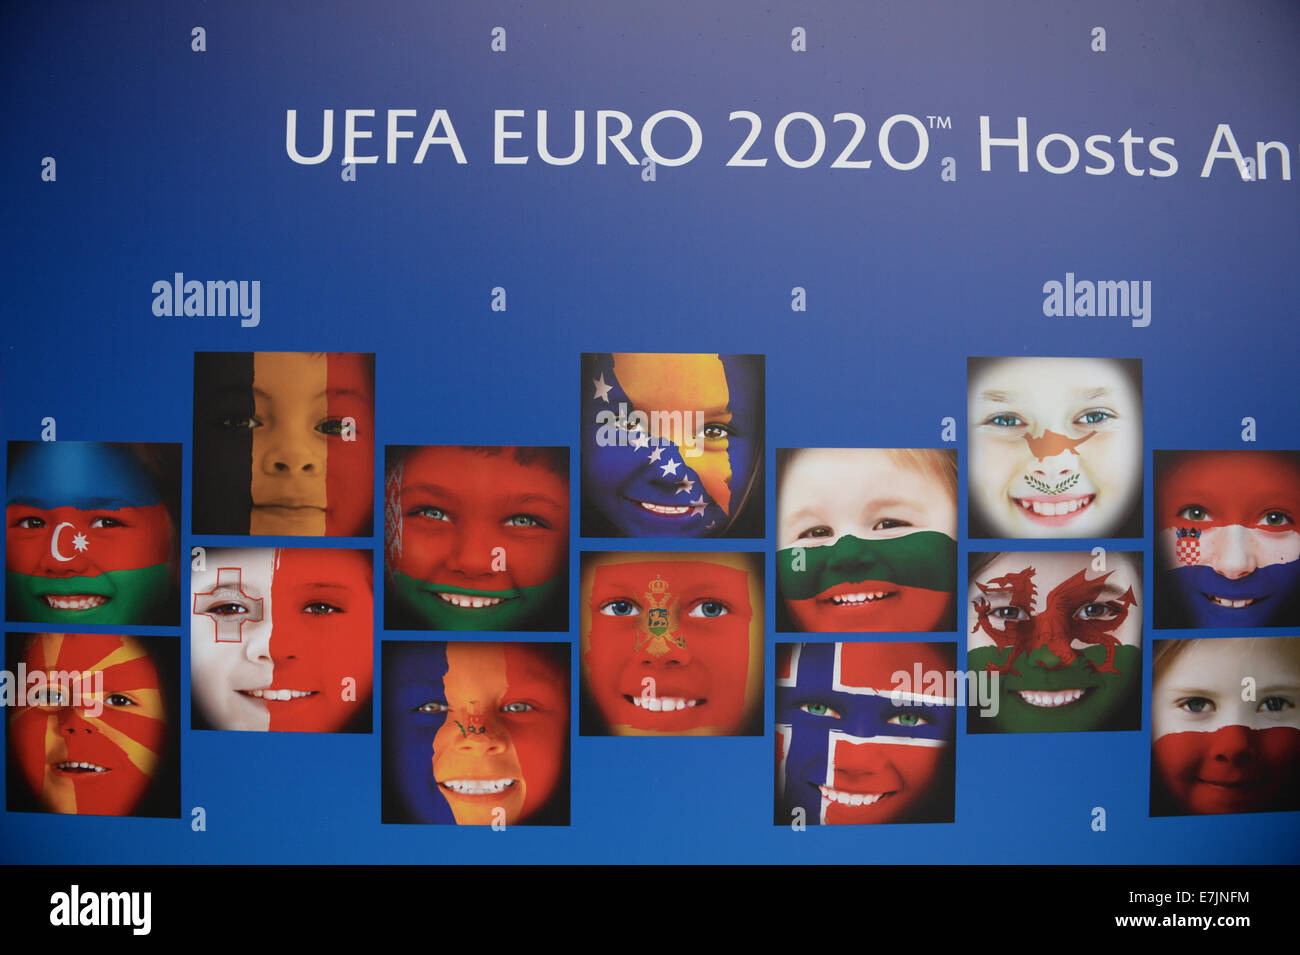 Ginebra, Suiza. 19 Sep, 2014. Un banner publicitario para la UEFA EURO 2020 campeonatos de fútbol europeo se ve fuera del Espace Hippomene, en Ginebra, Suiza, el 19 de septiembre de 2014. El torneo UEFA Euro 2020 se celebrará en 13 ciudades en 13 diferentes países europeos. Crédito: dpa picture alliance/Alamy Live News Foto de stock